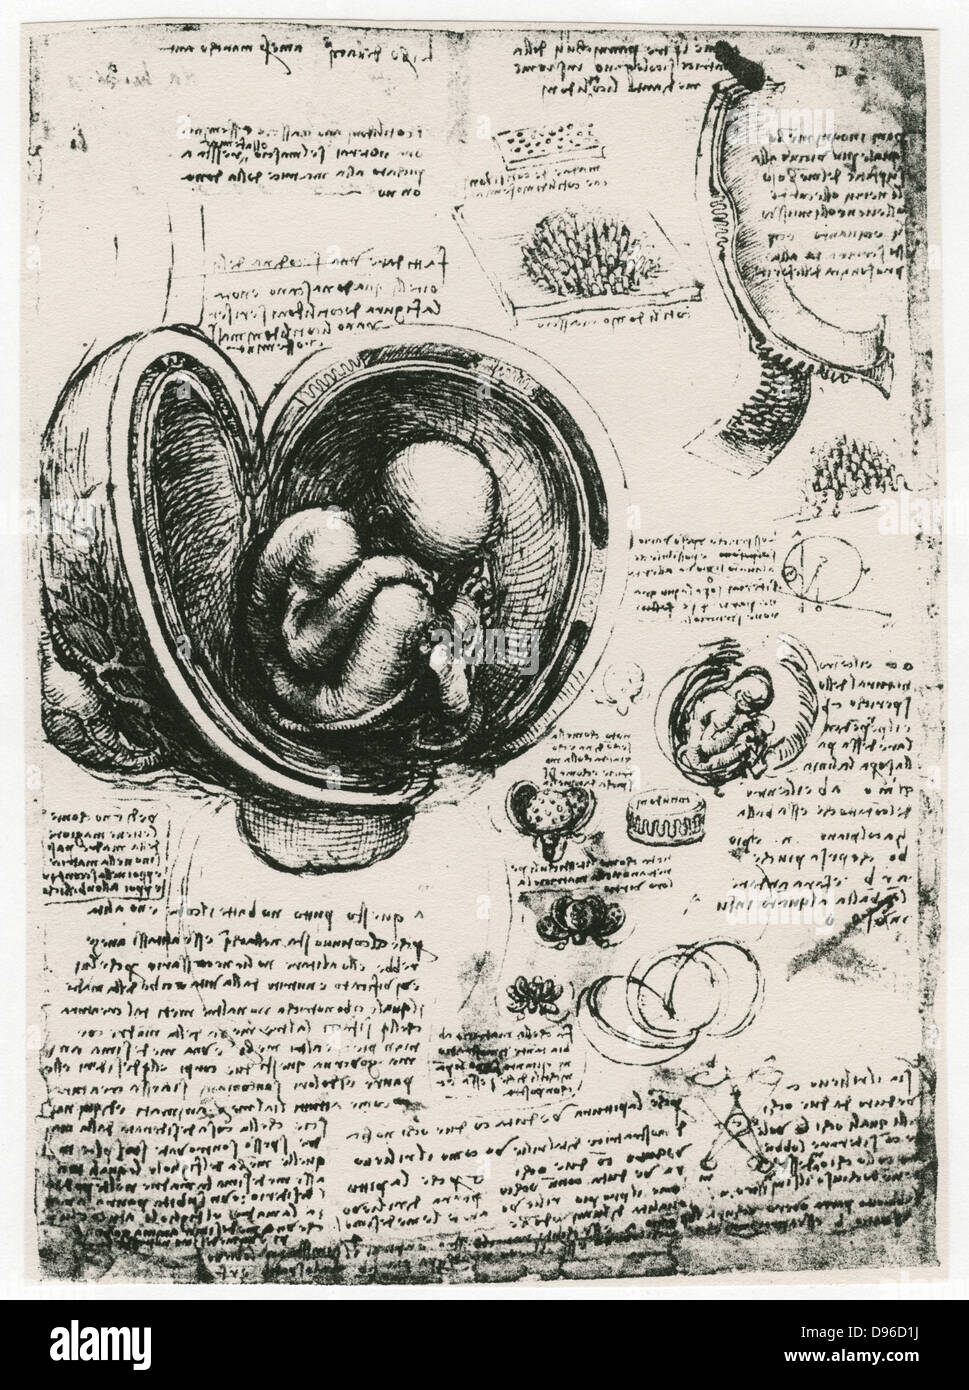 Leonardo da Vinci (1452-1519) italienischer Maler, Bildhauer, Ingenieur, Architekt. Zeichnung eines Fötus in der Gebärmutter. Stockfoto